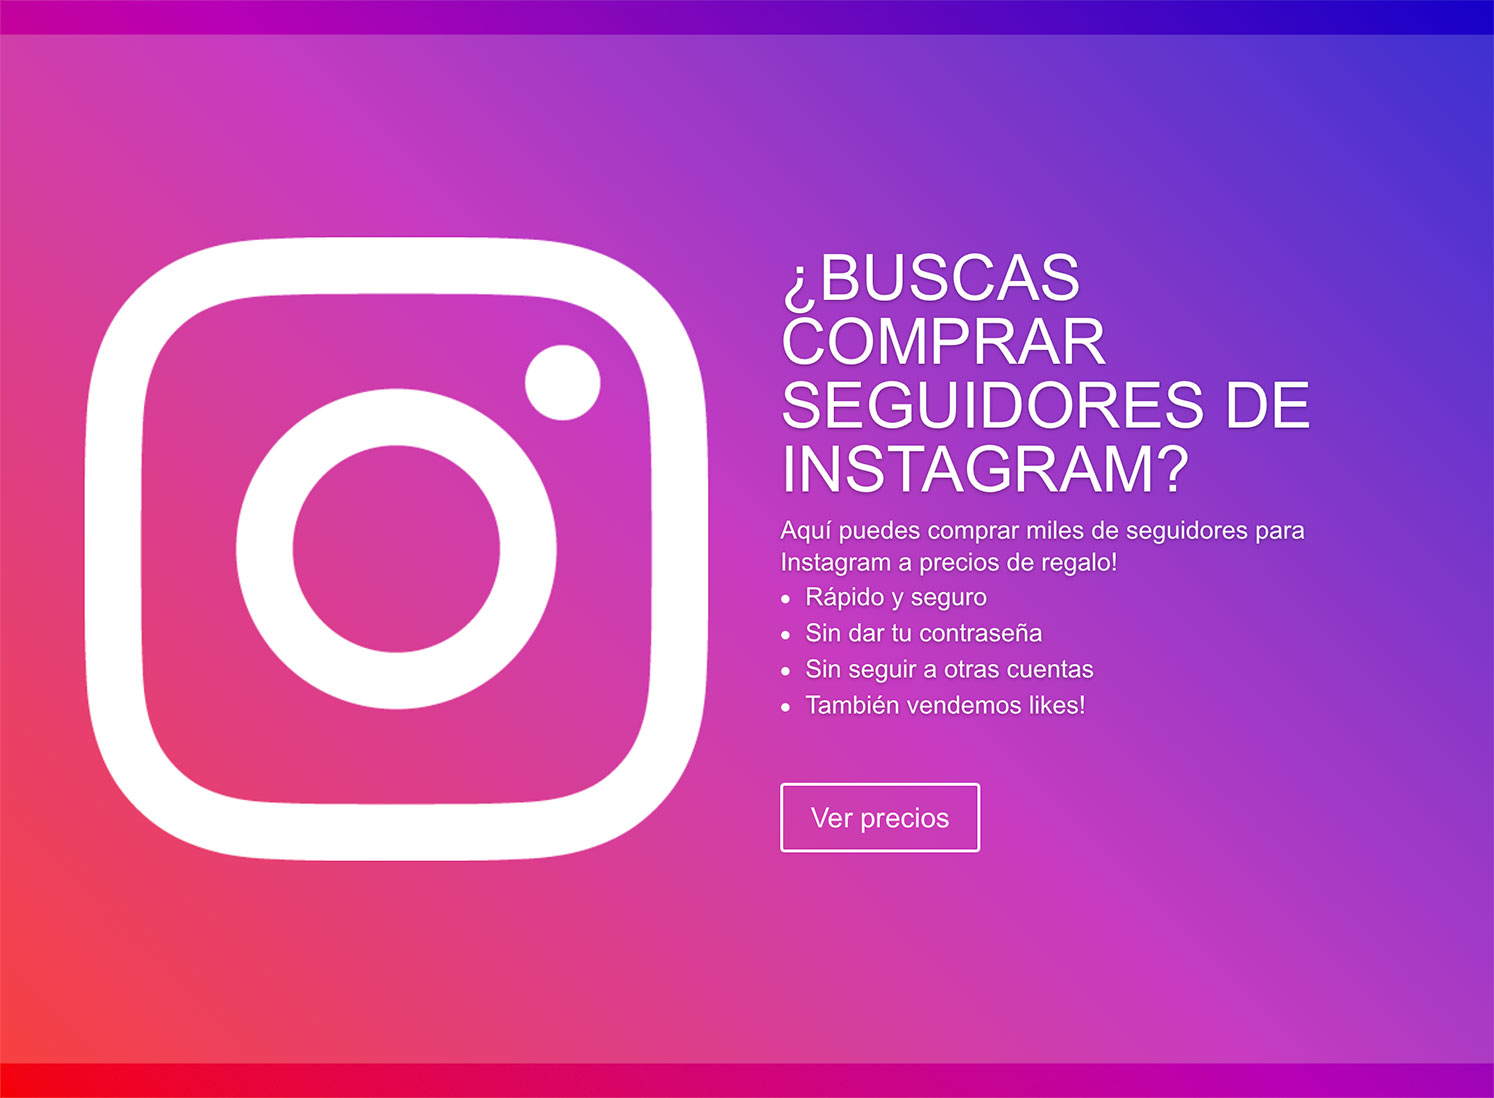 Besugo Indígena ayudante Sirve comprar seguidores de Instagram? | Marketingaholic